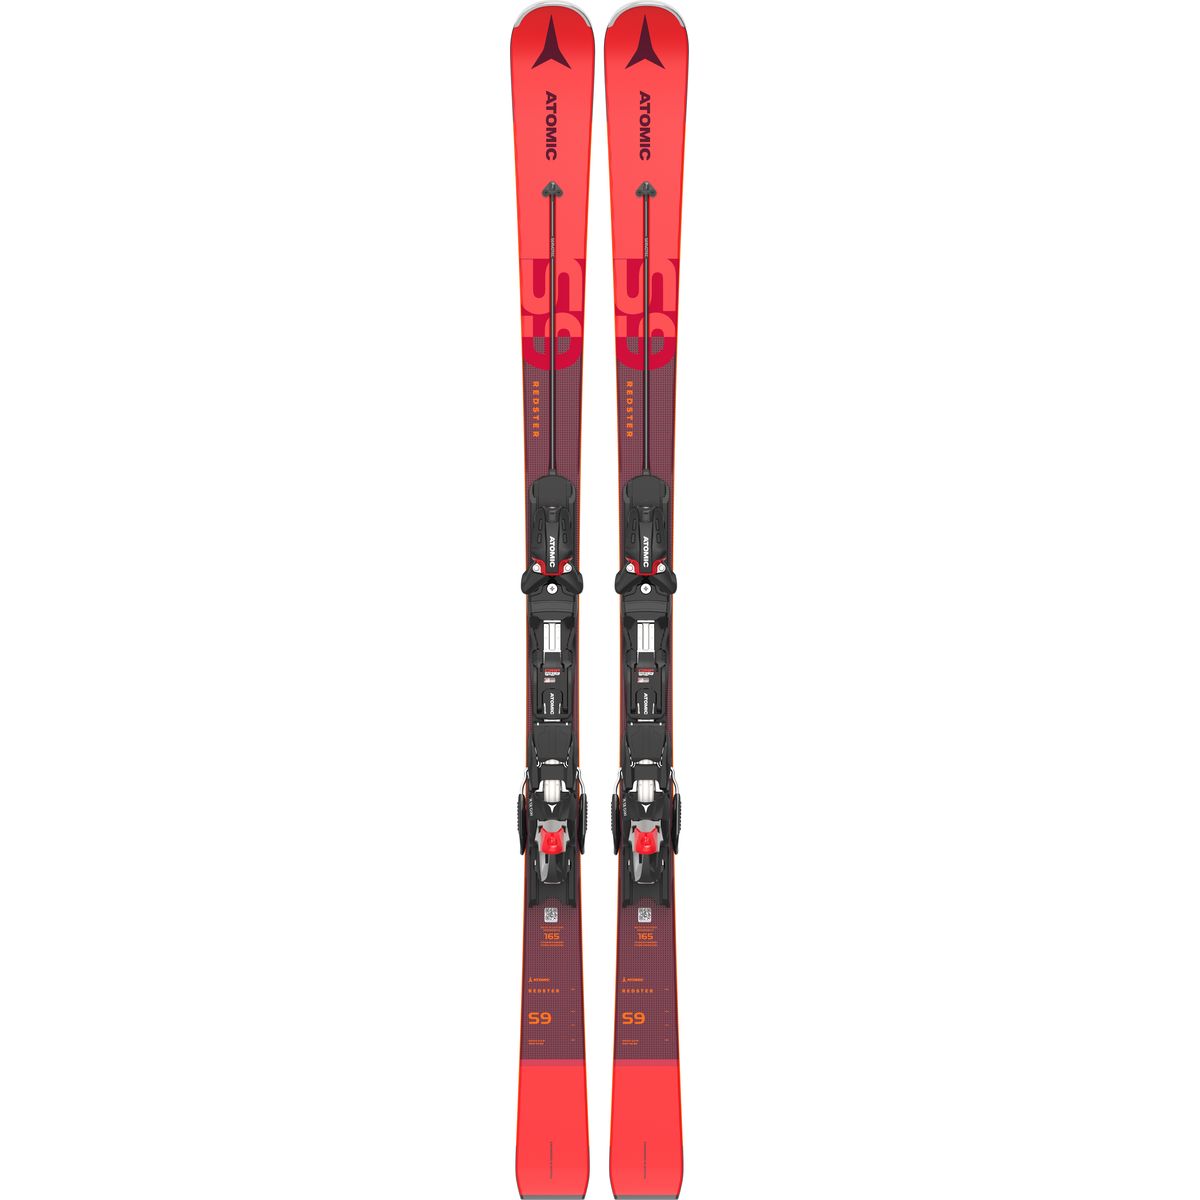 Atomic Redster S9 Servotec + X 12 GW Piste Ski